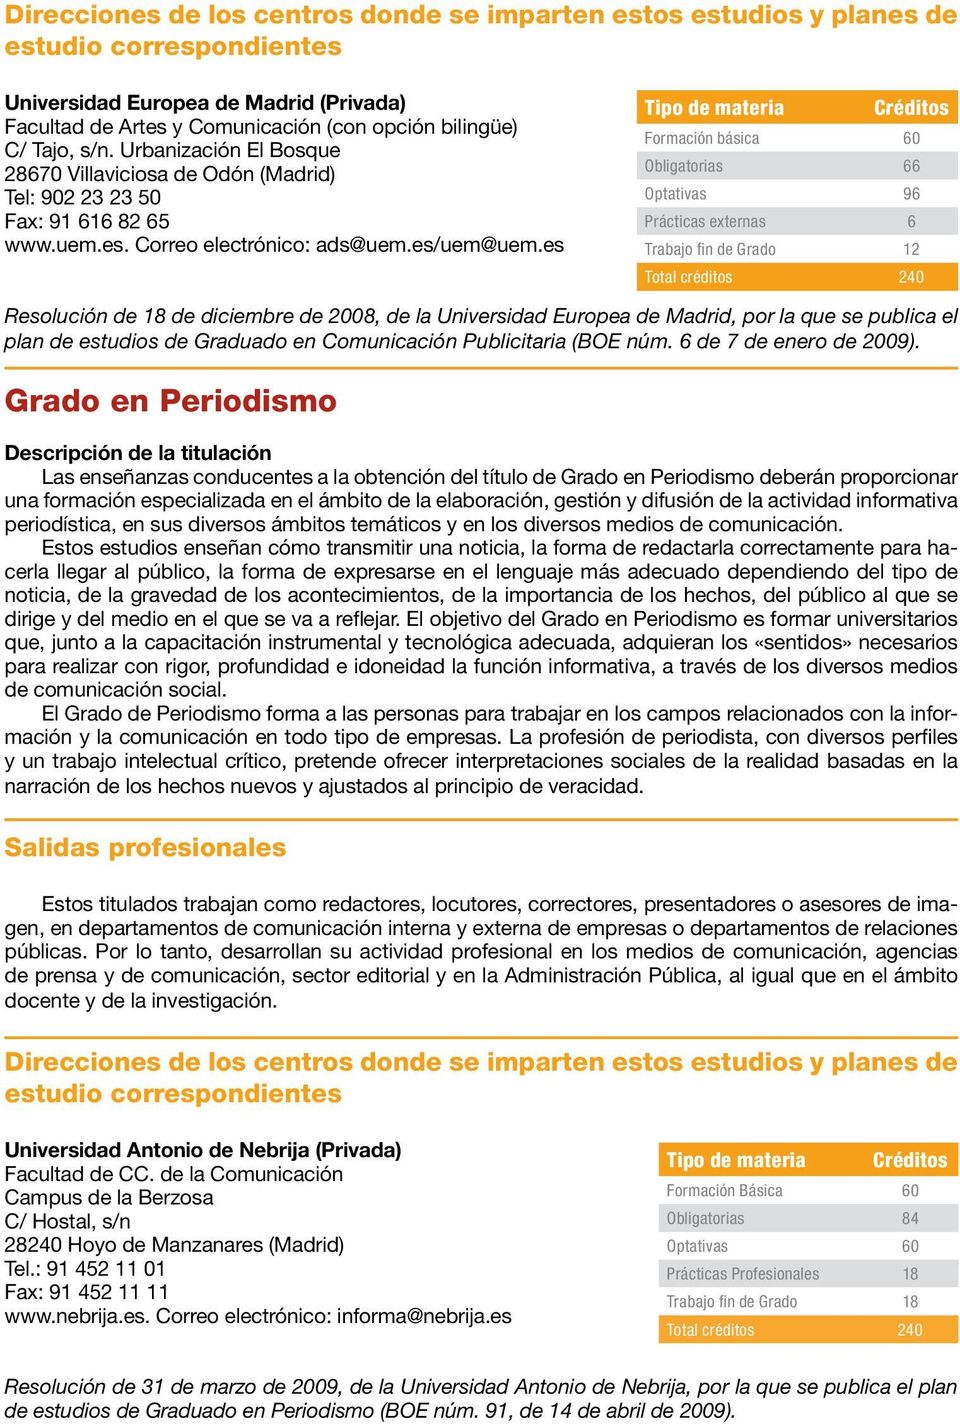 es Resolución de 18 de diciembre de 2008, de la Universidad Europea de Madrid, por la que se publica el plan de estudios de Graduado en Comunicación Publicitaria (BOE núm. 6 de 7 de enero de 2009).